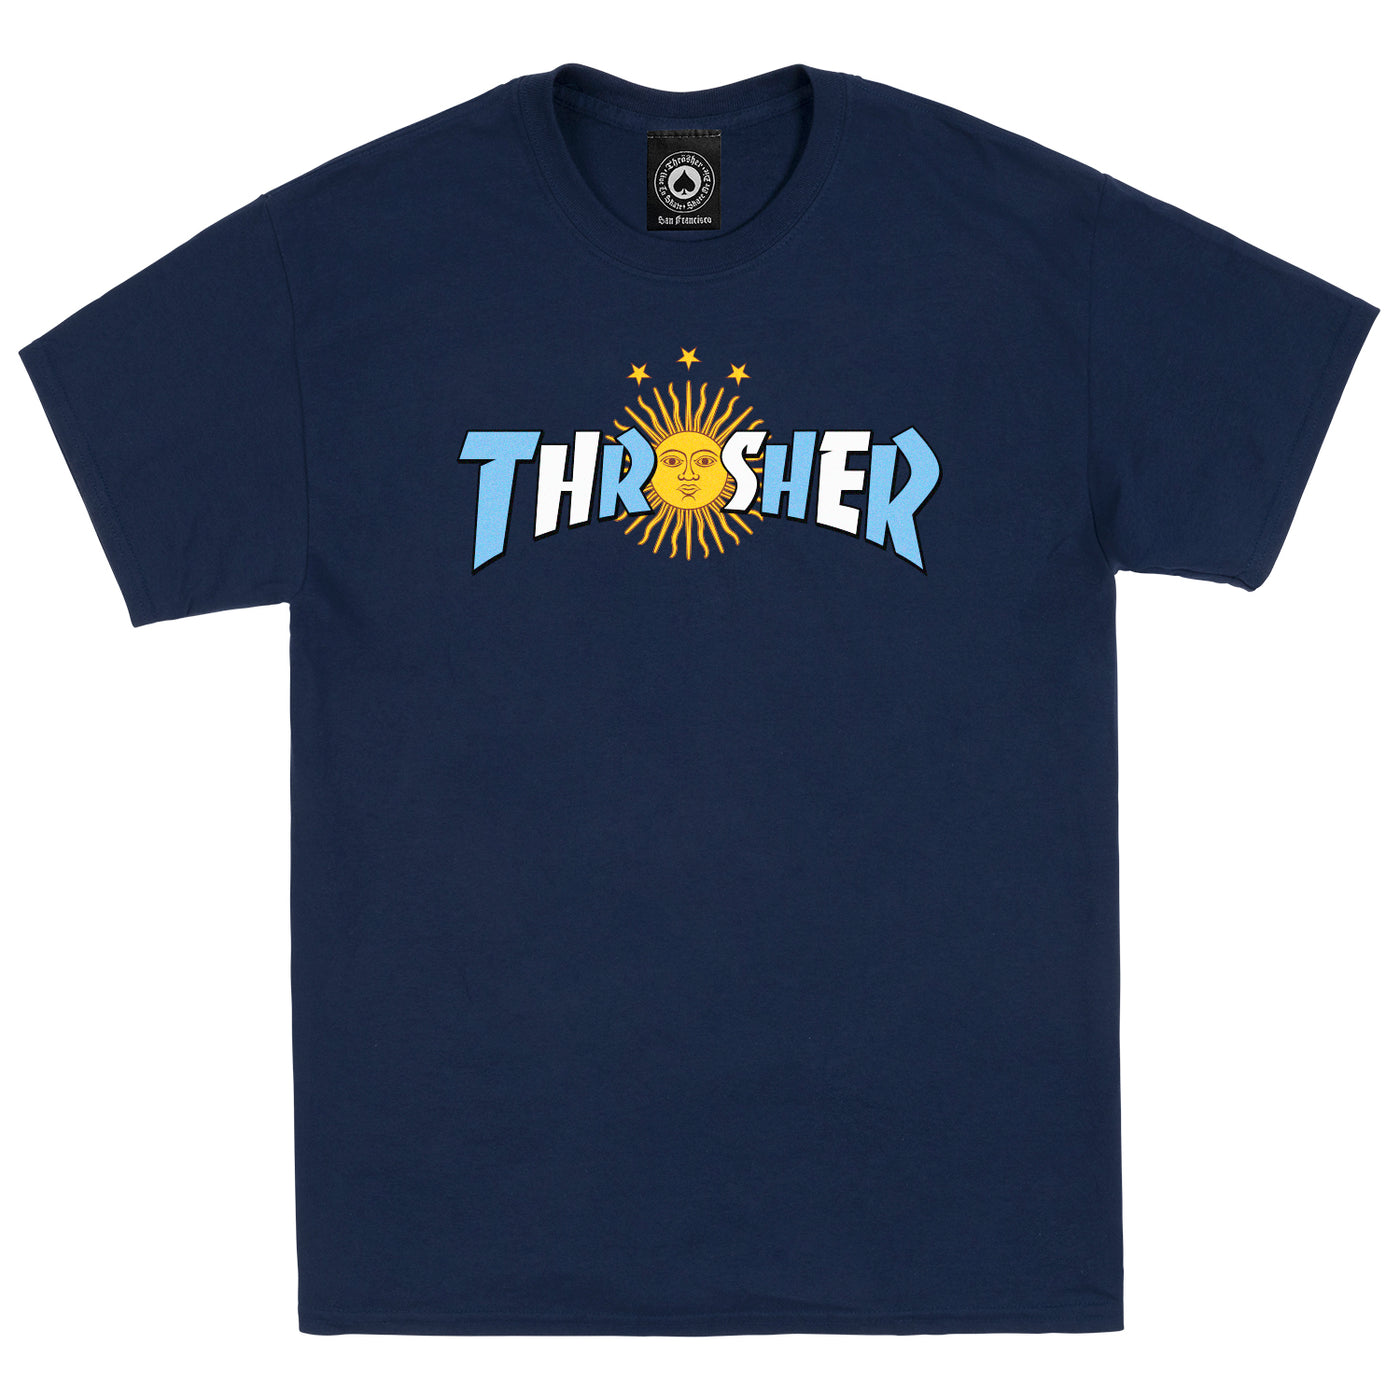 Thrasher - Polera Argentina Estrella Navy Blue - Lo Mejor De Thrasher - Solo Por $24990! Compra Ahora En Wallride Skateshop